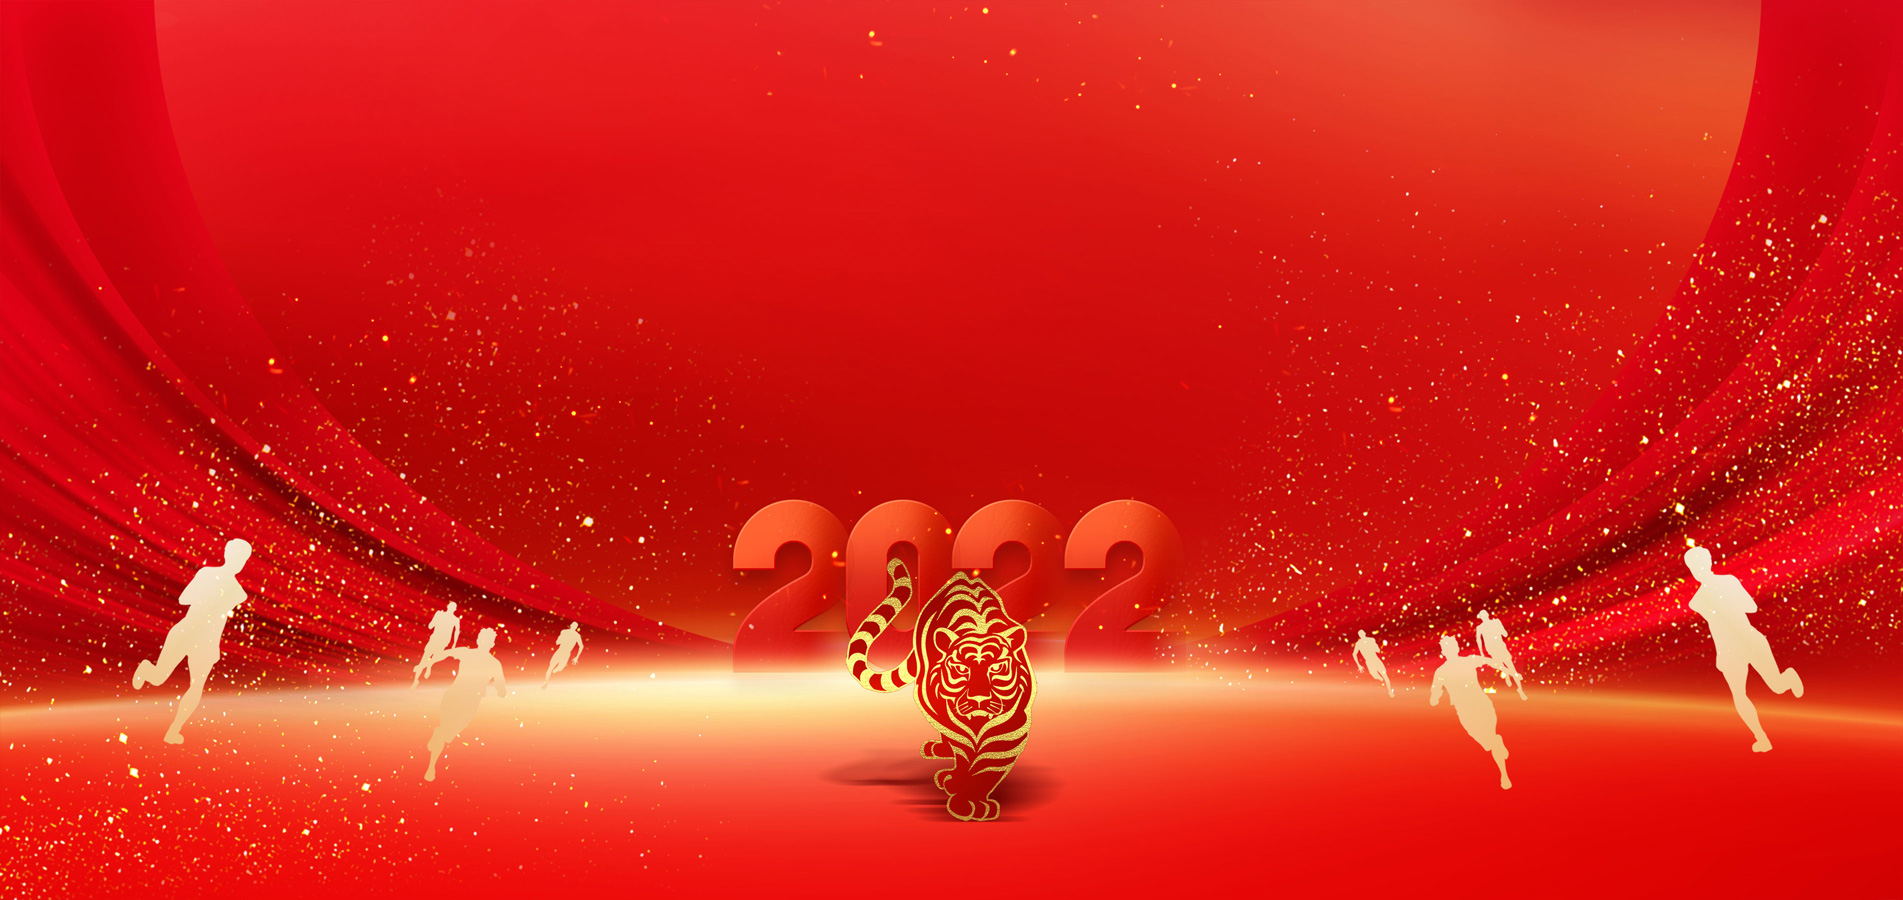 河南鑫安利安全科技股份有限公司祝大家新年快乐